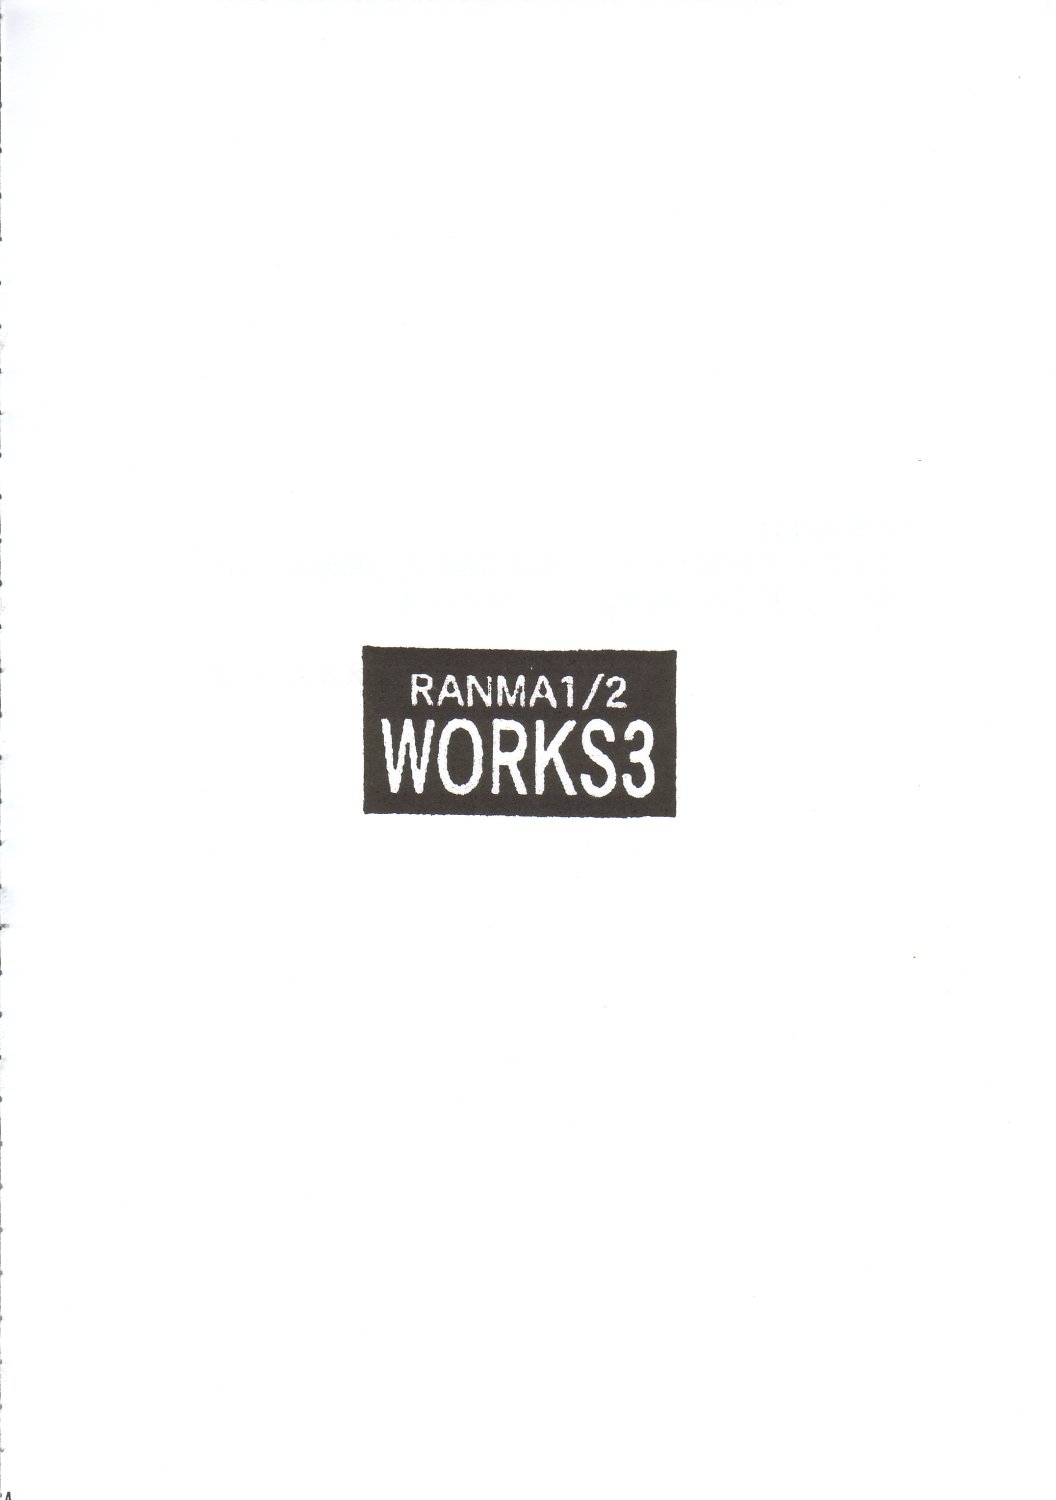 [スタジオKIMIGABUCHI (えんとっくん)] RANMA1/2 WORKS 3 (らんま1/2)